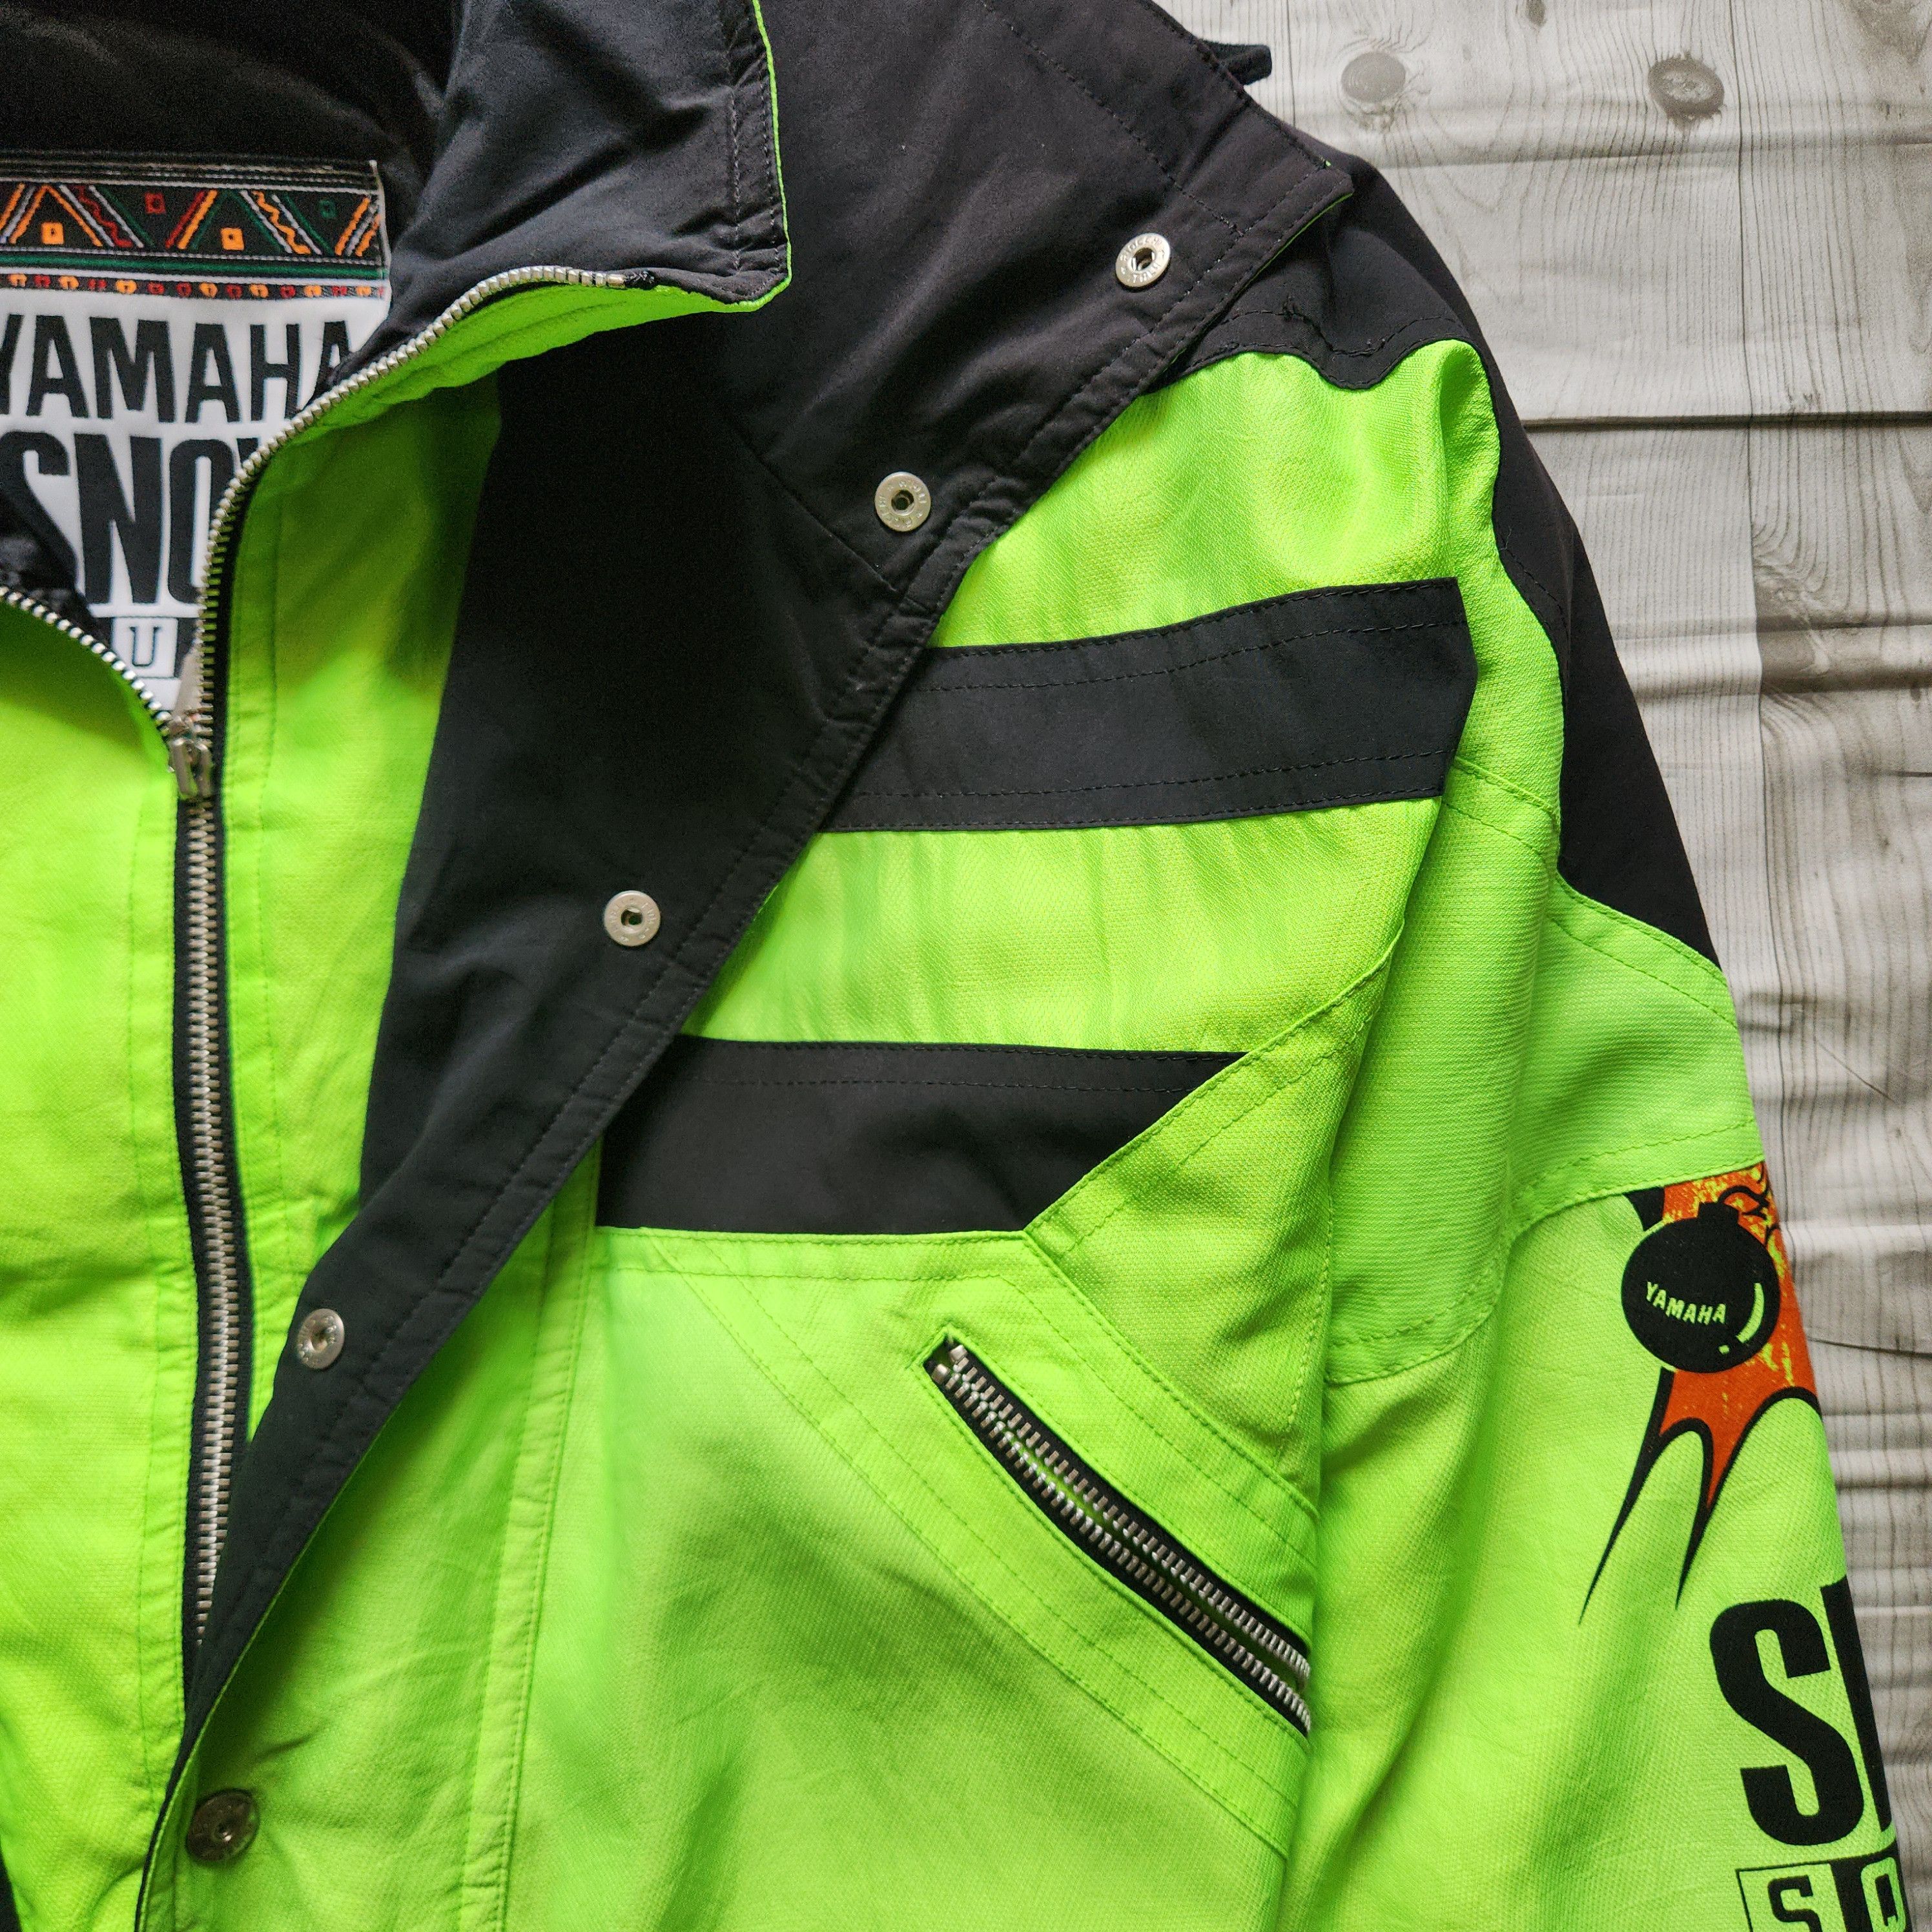 Yamaha - Yahama Snow Square Ski Jacket - 6